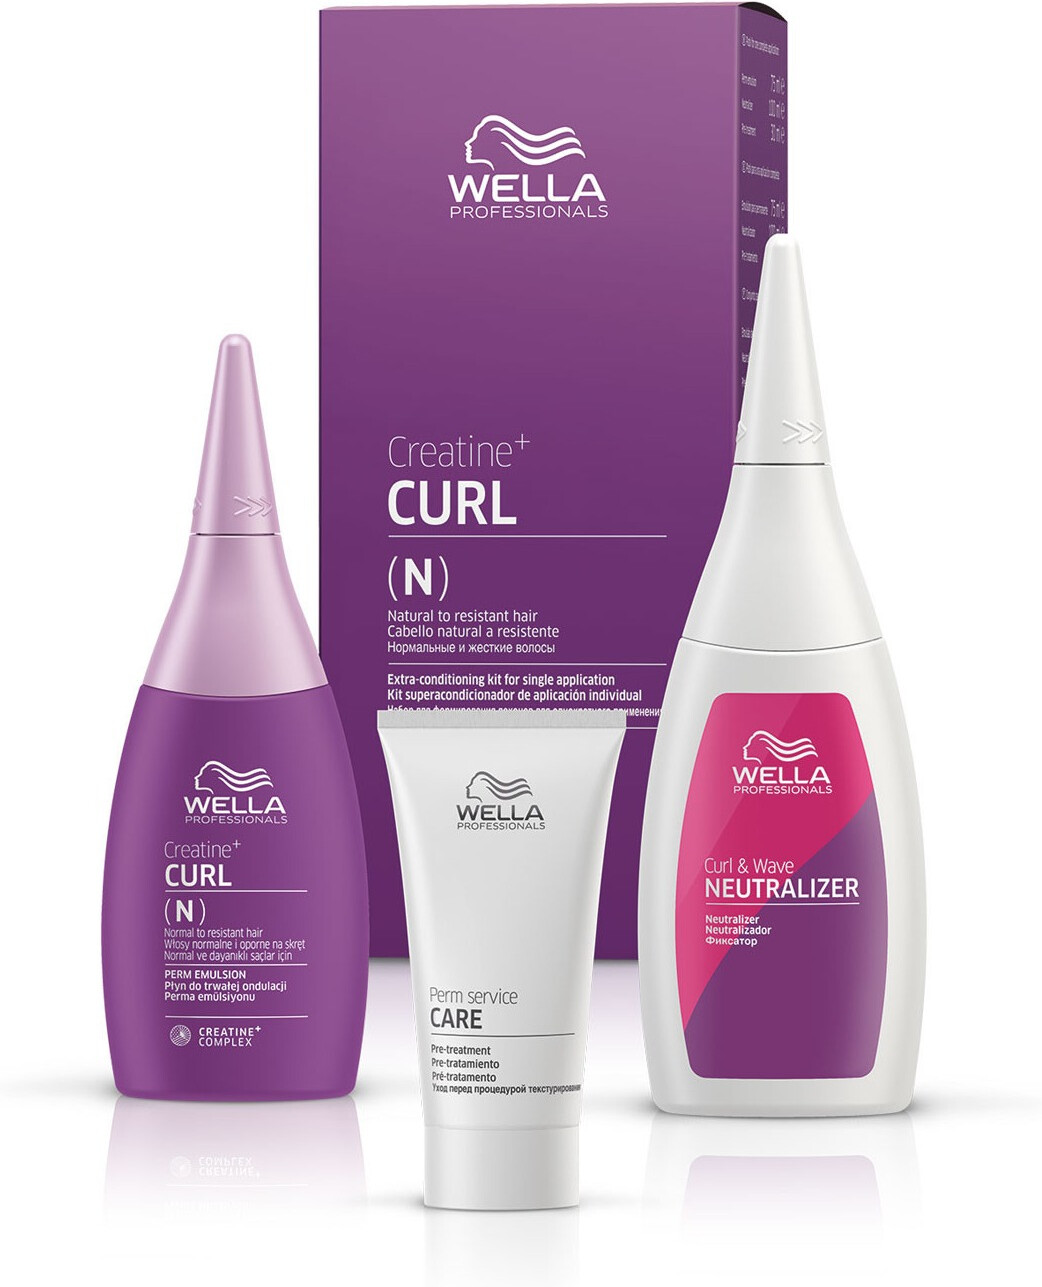 Photos - Hair Product Wella Creatine+ Curl N/R Hair Kit 